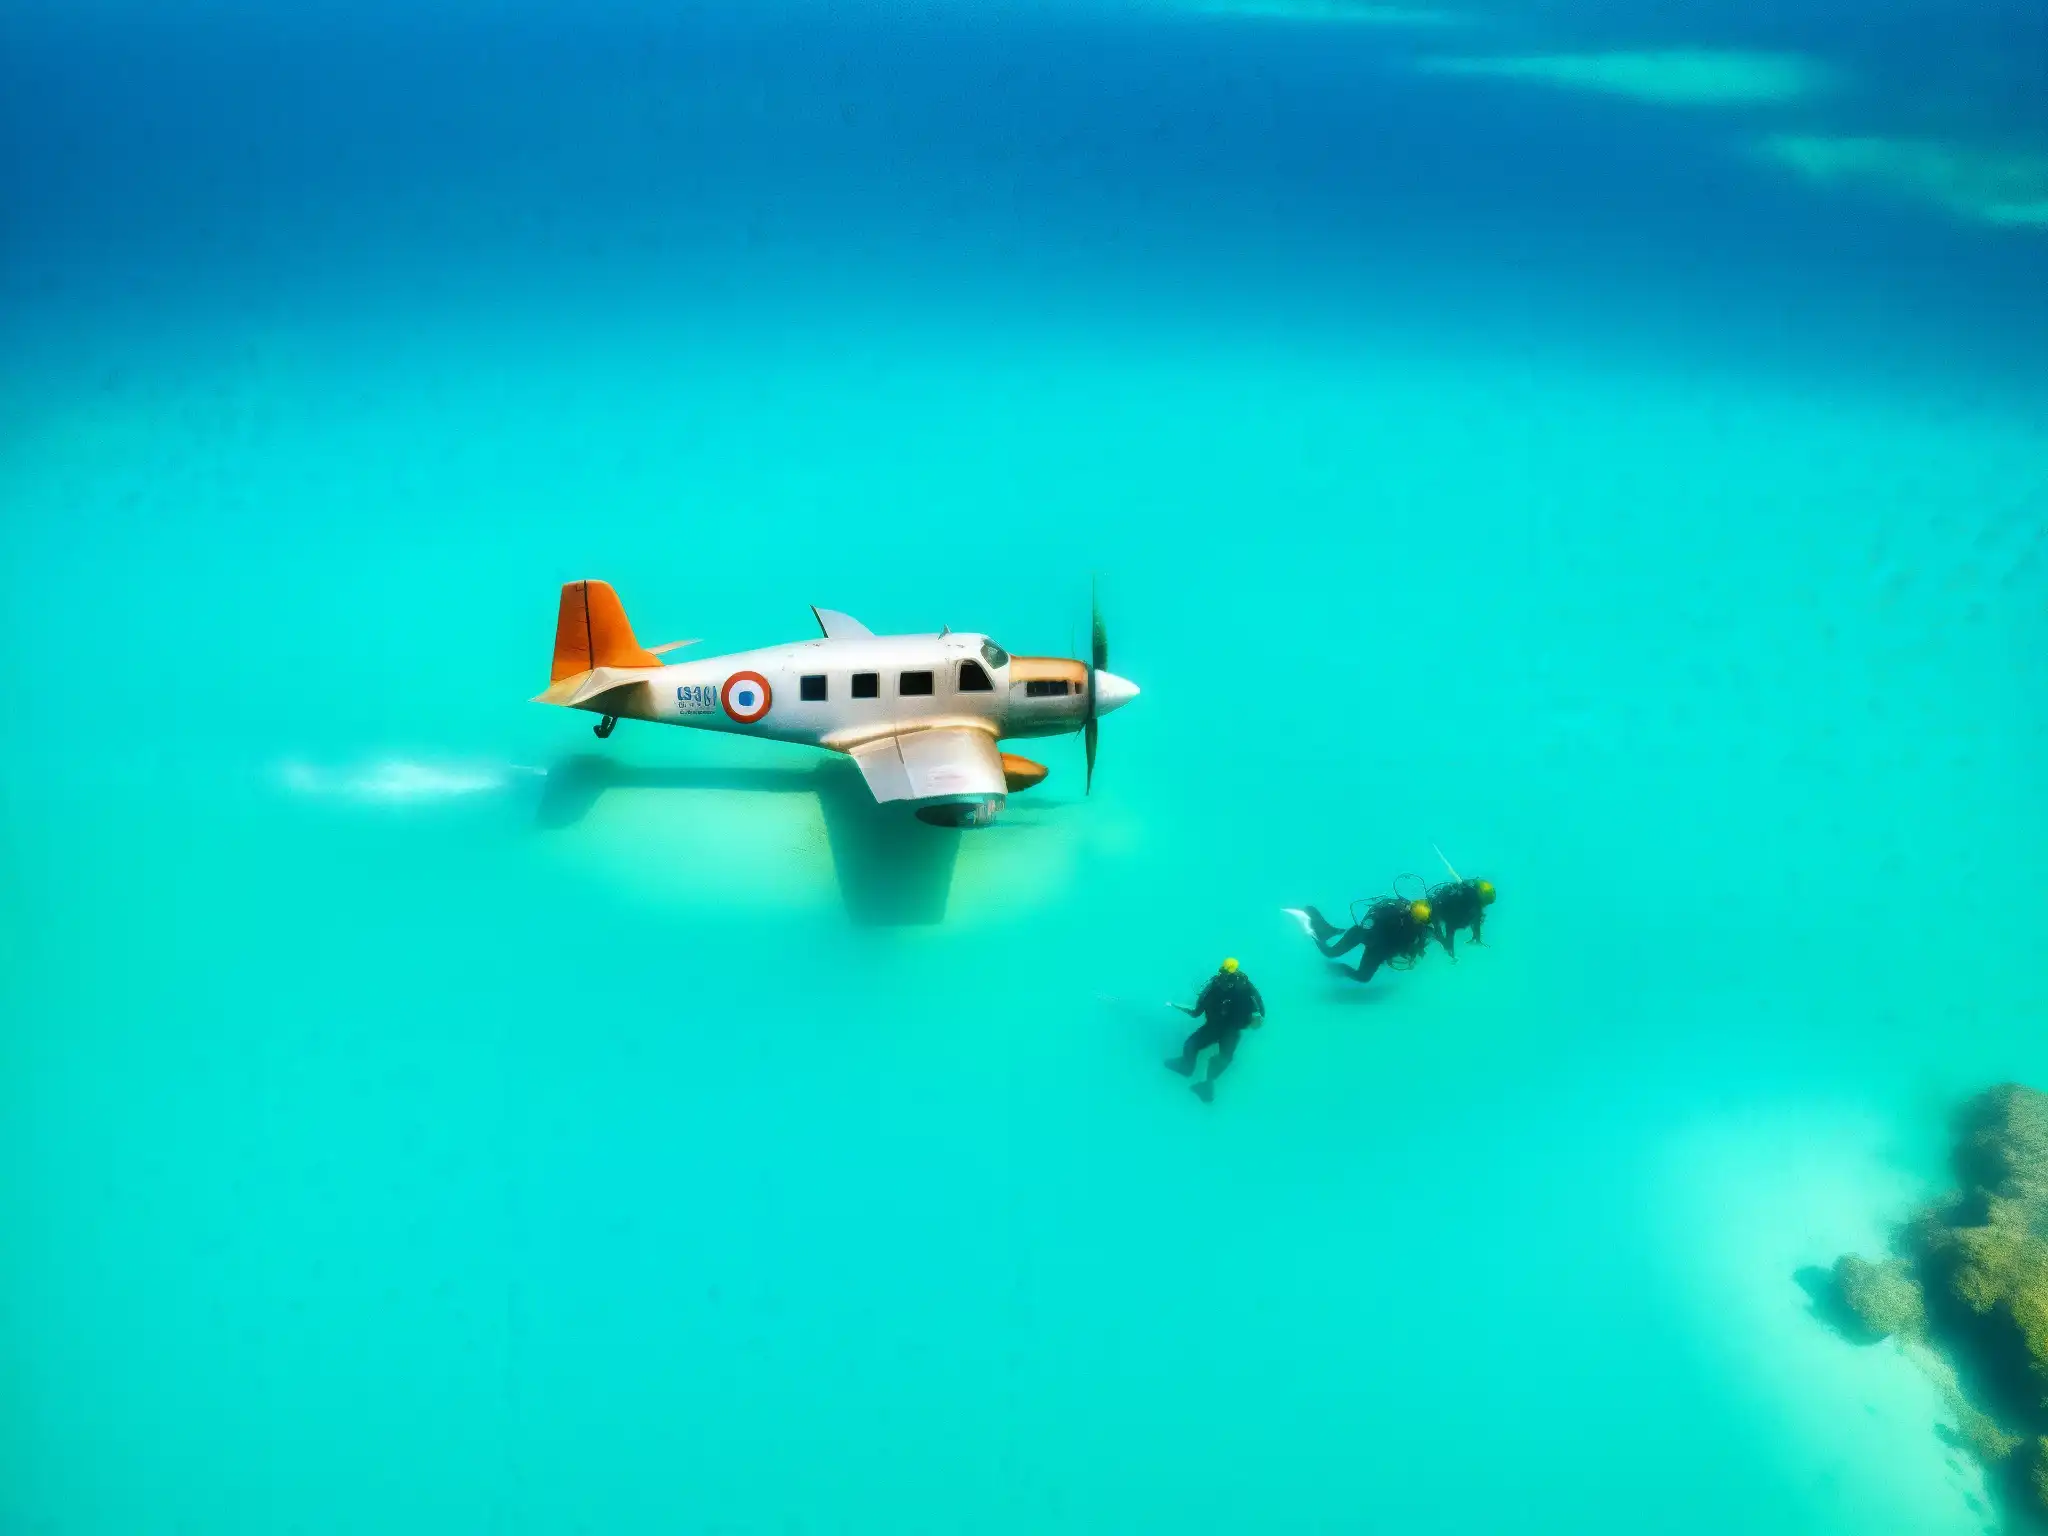 Equipo de buceo investiga misterioso avión hundido en el Triángulo de las Bermudas, con agua turquesa y luz solar filtrándose